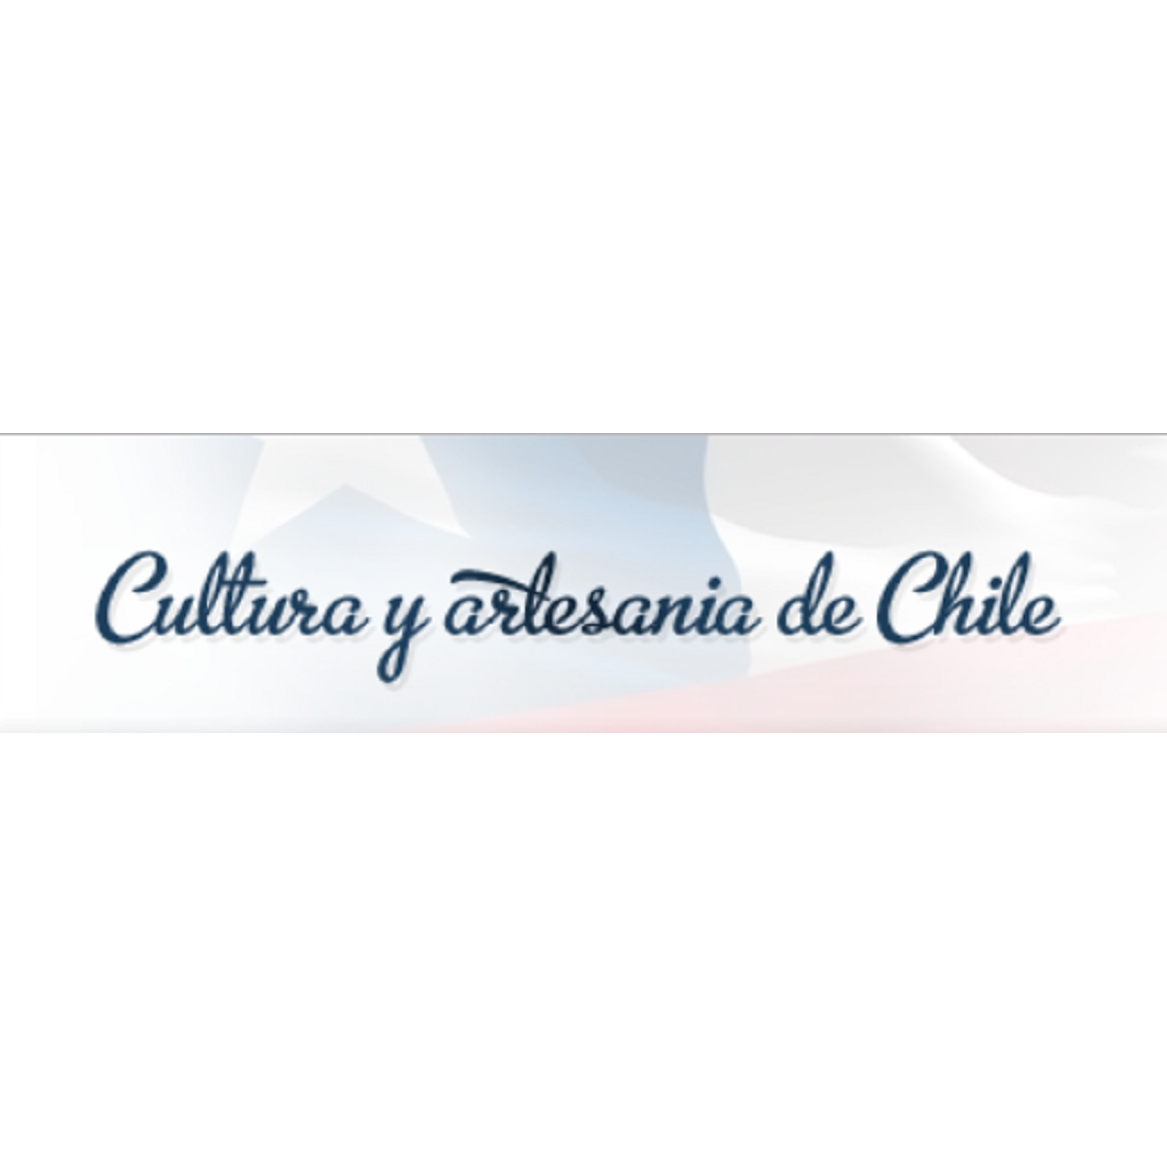 Cultura y Artesania de Chile